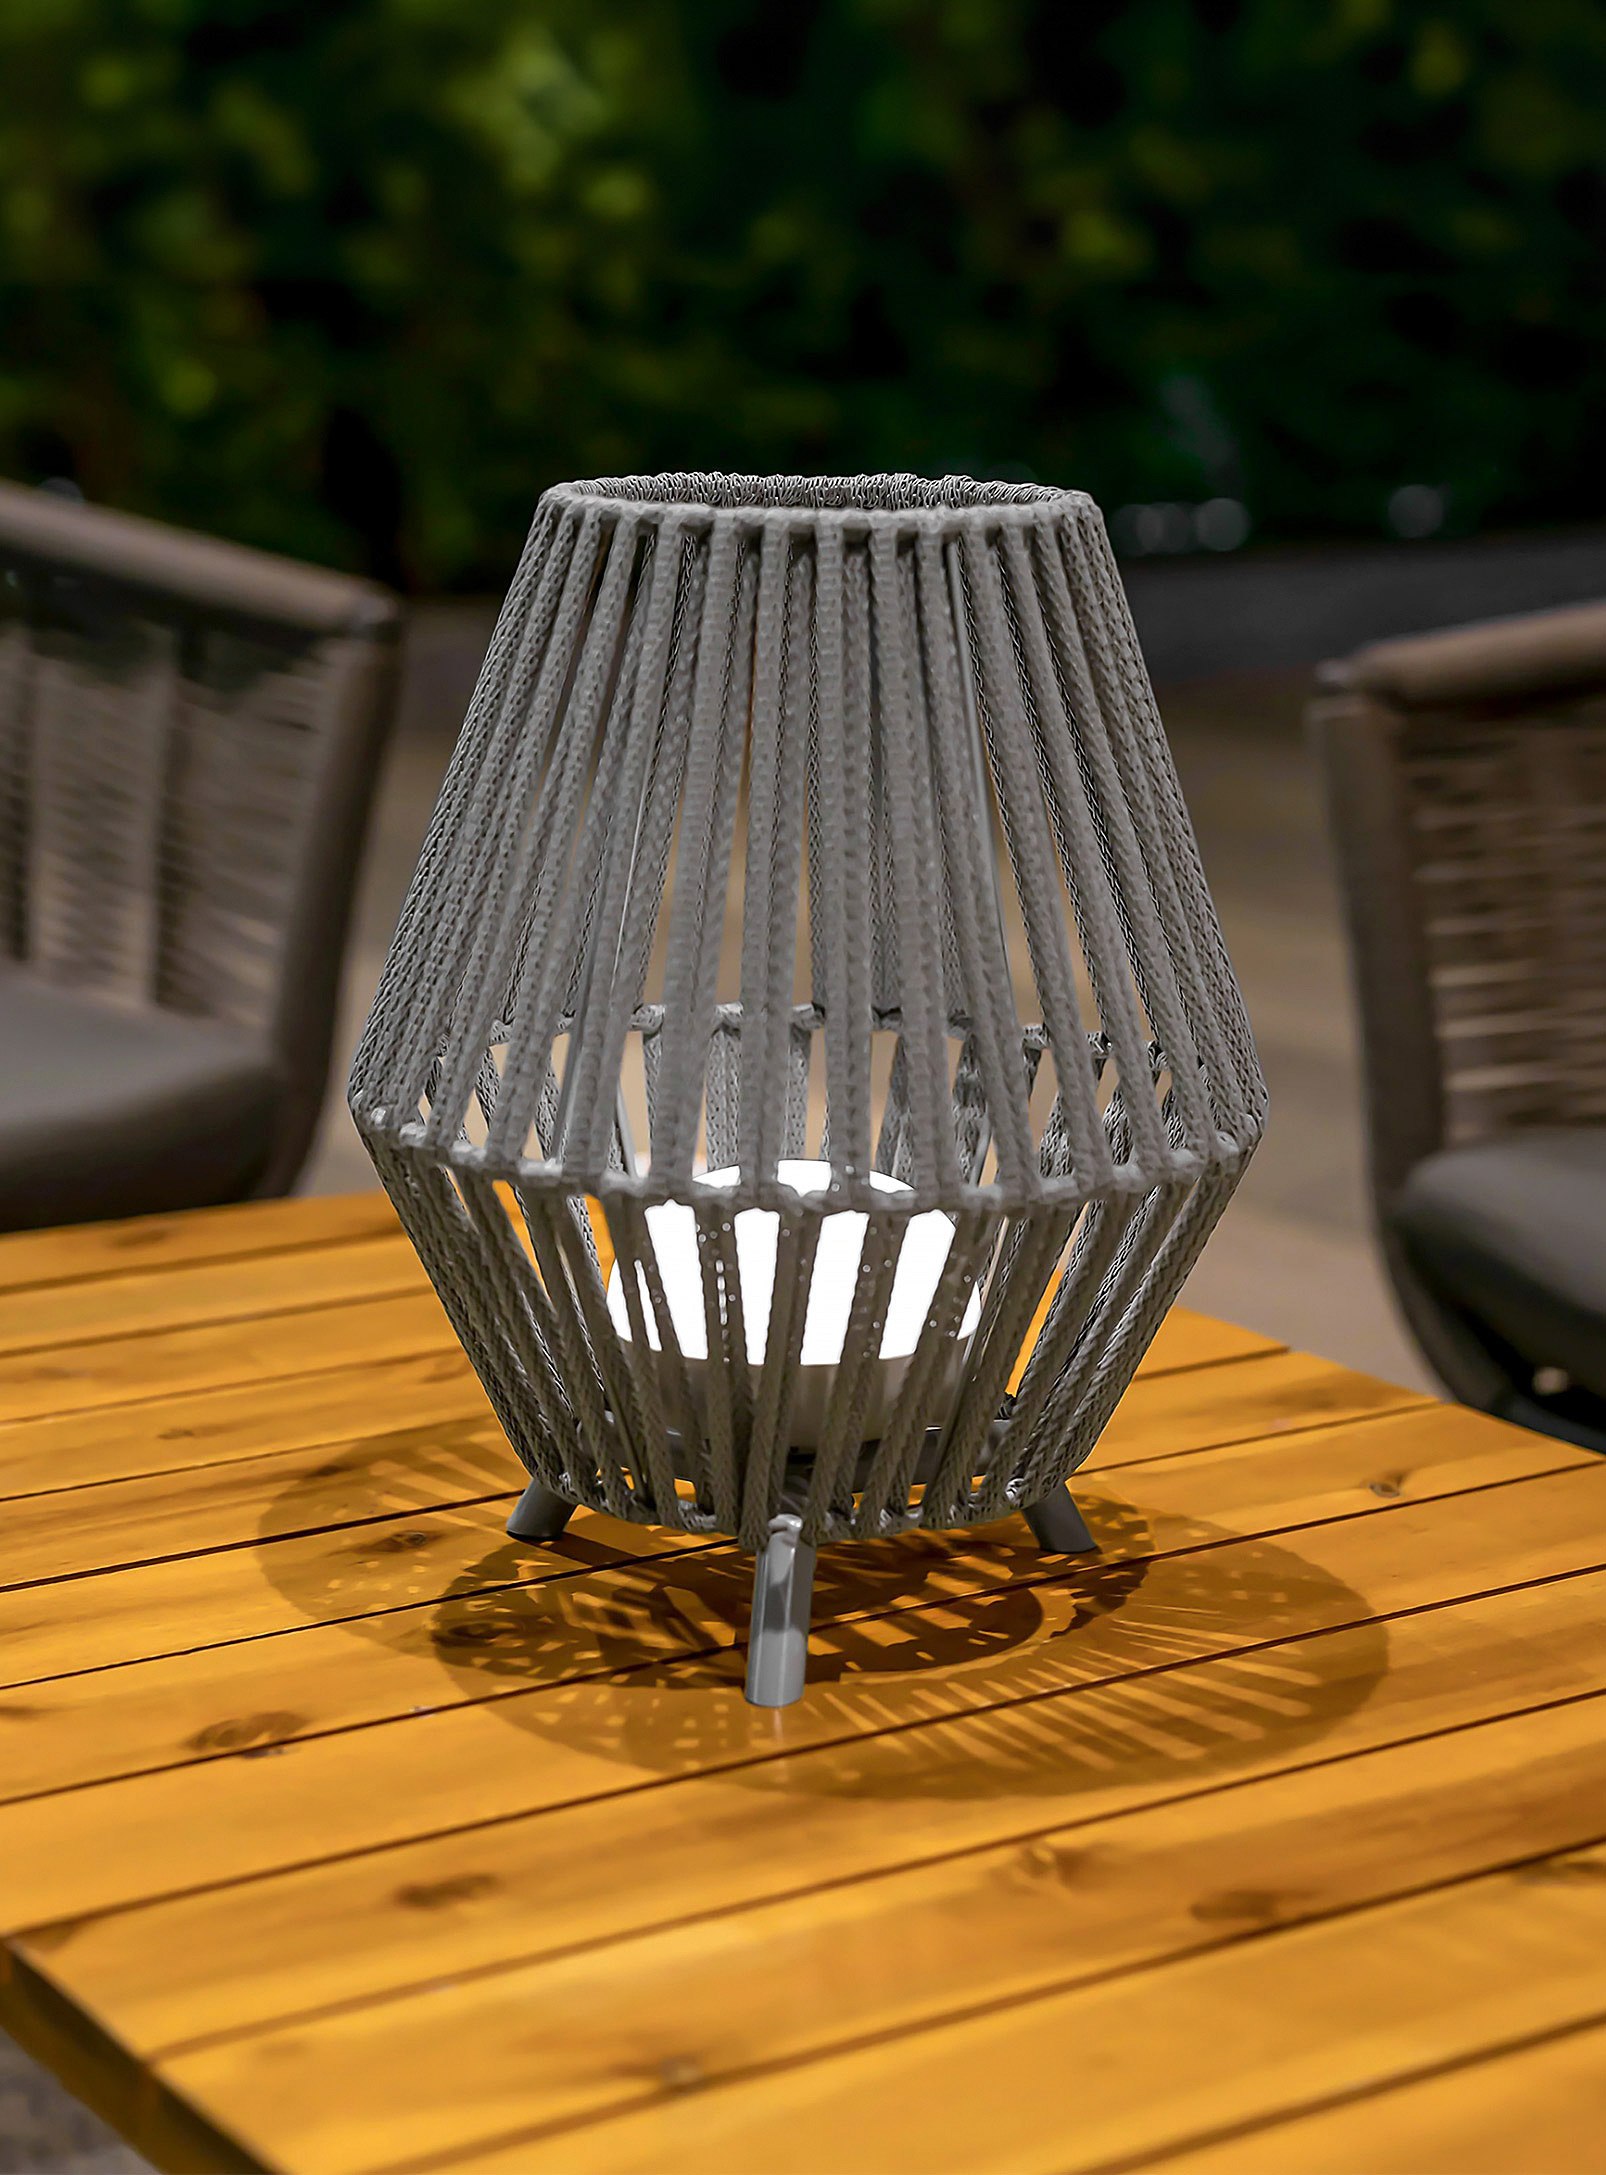 Newgarden - Conta indoor-outdoor openwork lamp 32.5 cm tall